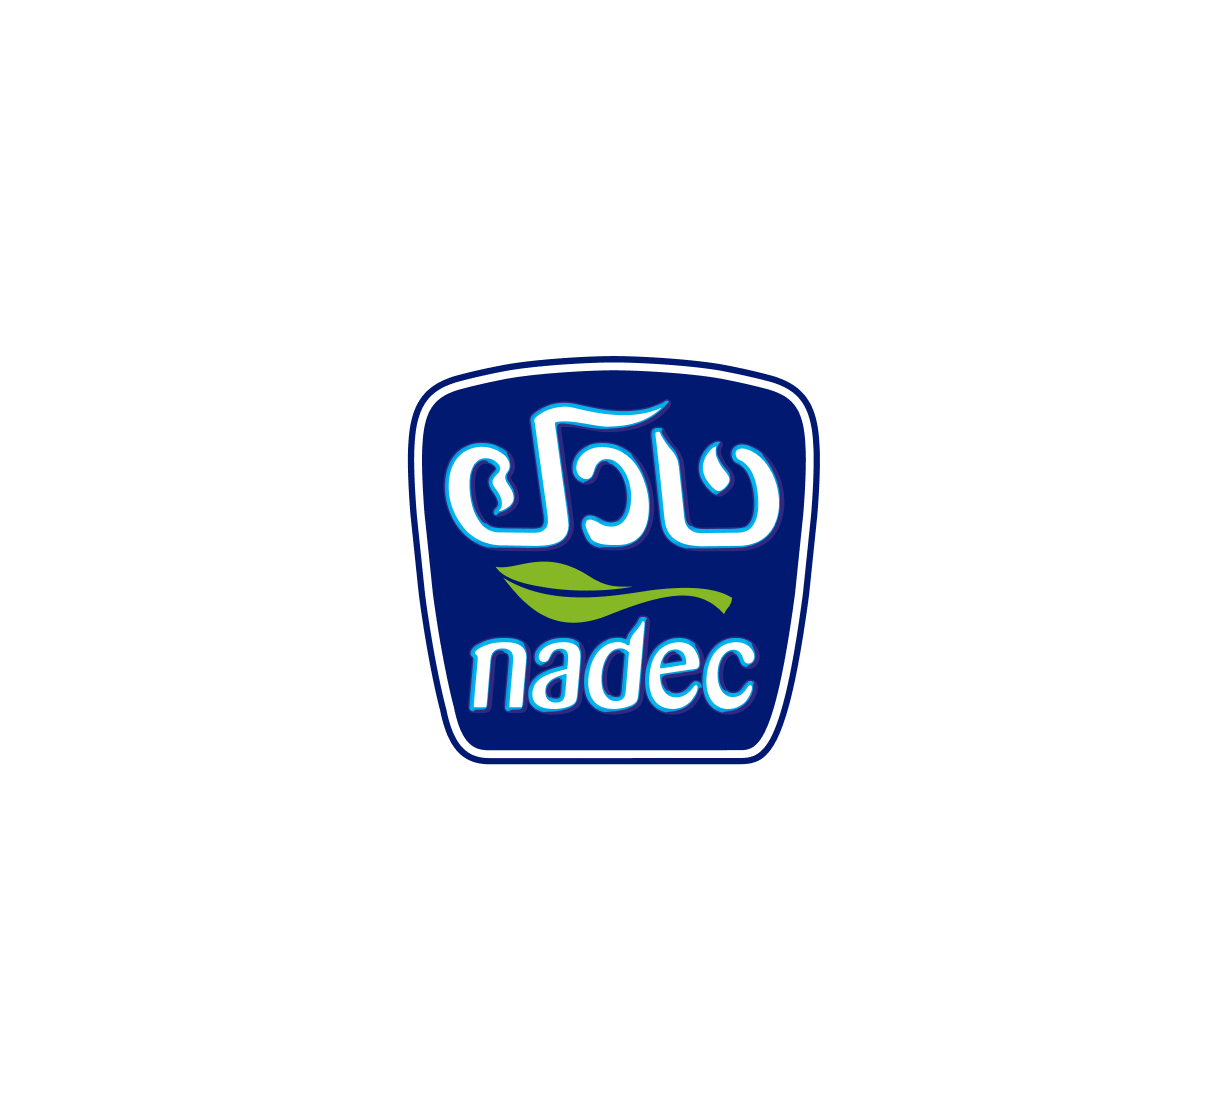 nadec-logo